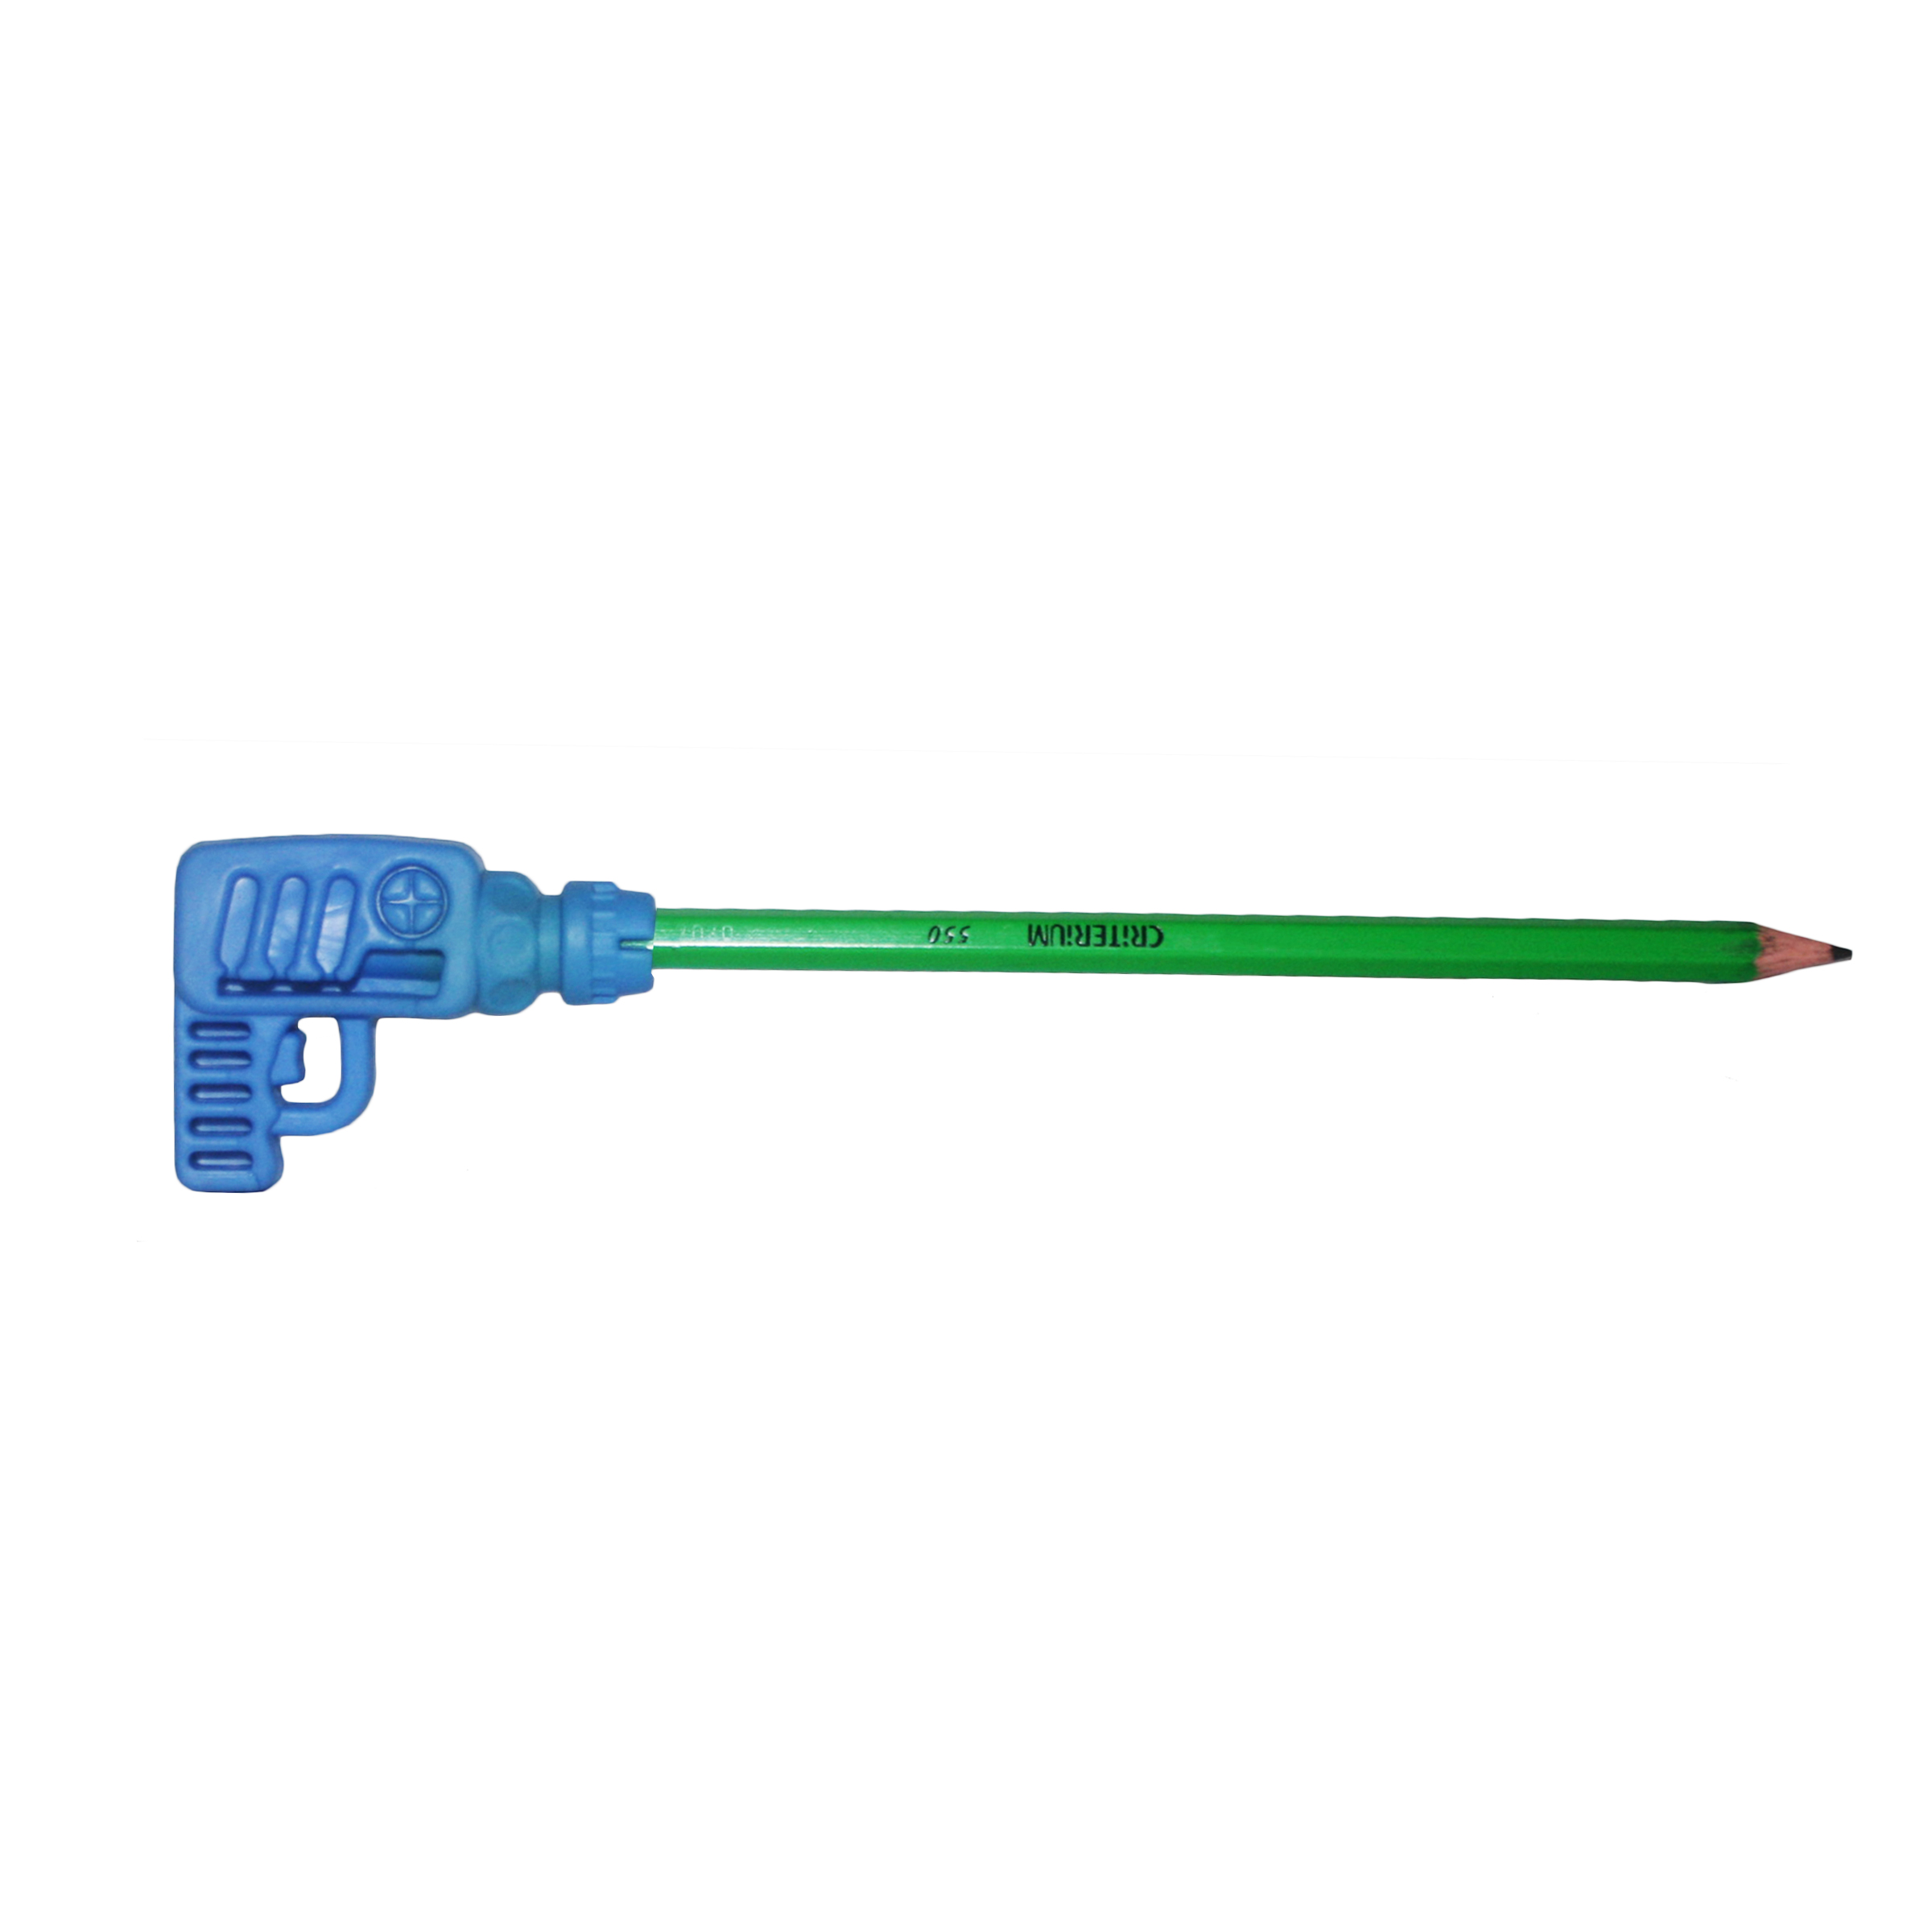 سر مدادی مدل blue drill کد 001 + مداد مشکی (مناسب برای روز مهندس)